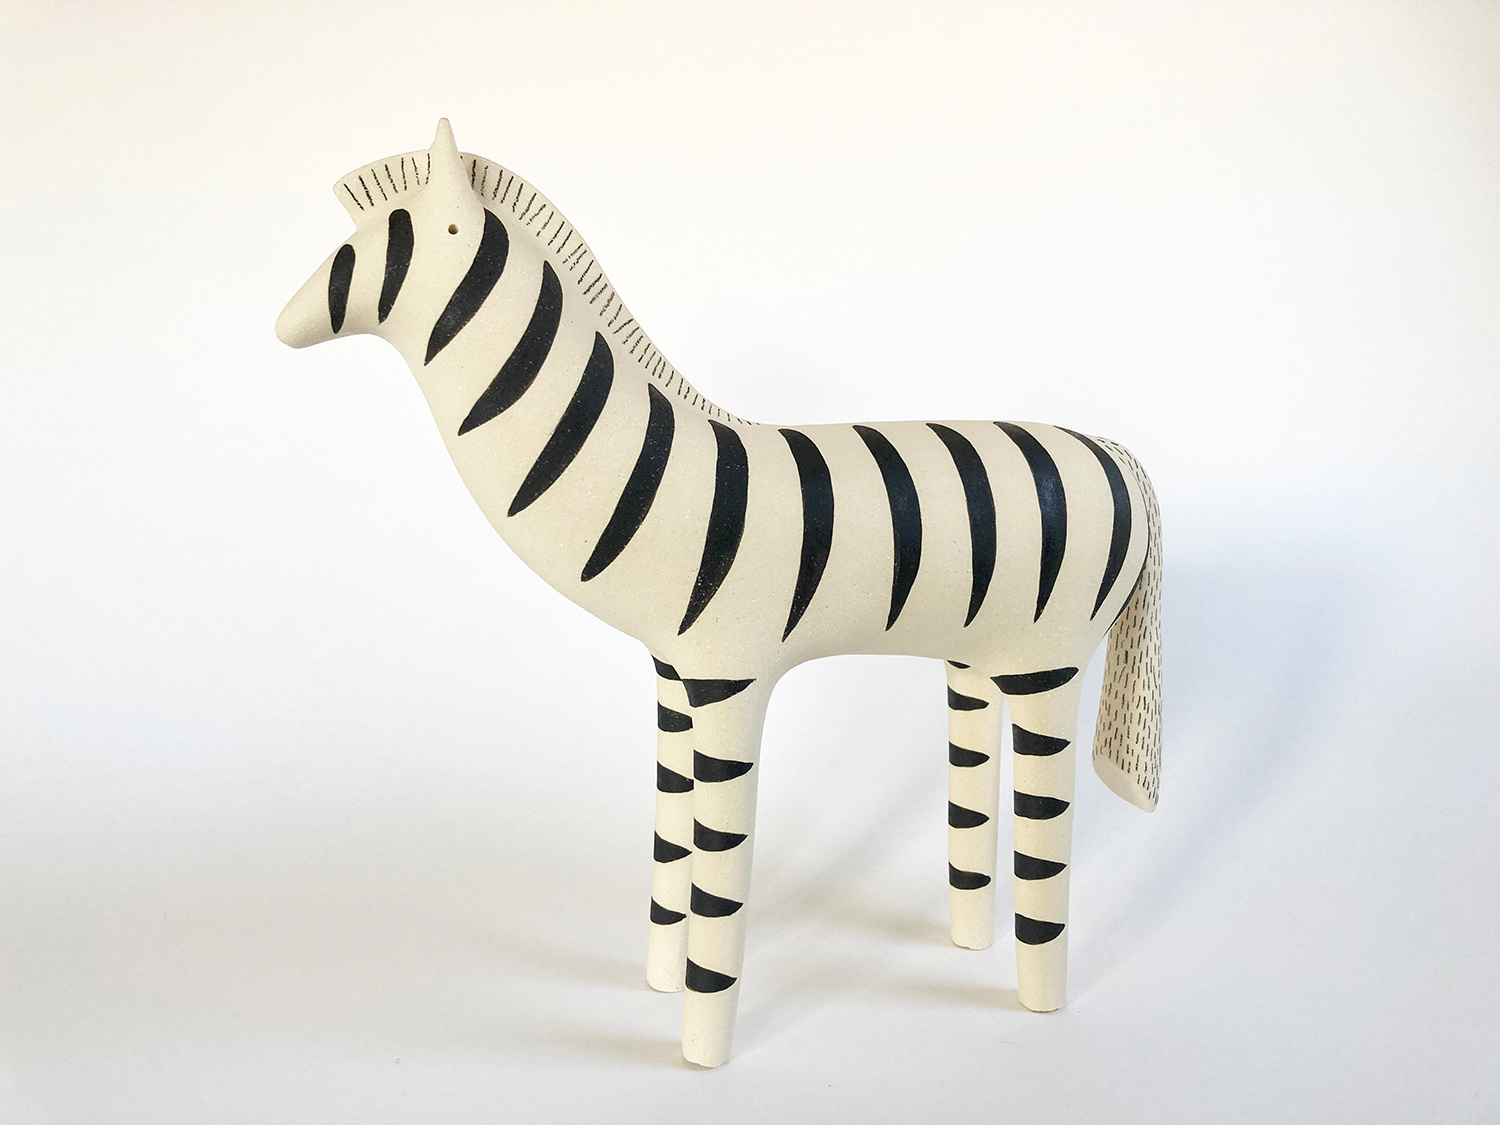 Zebra by Russell Wilson